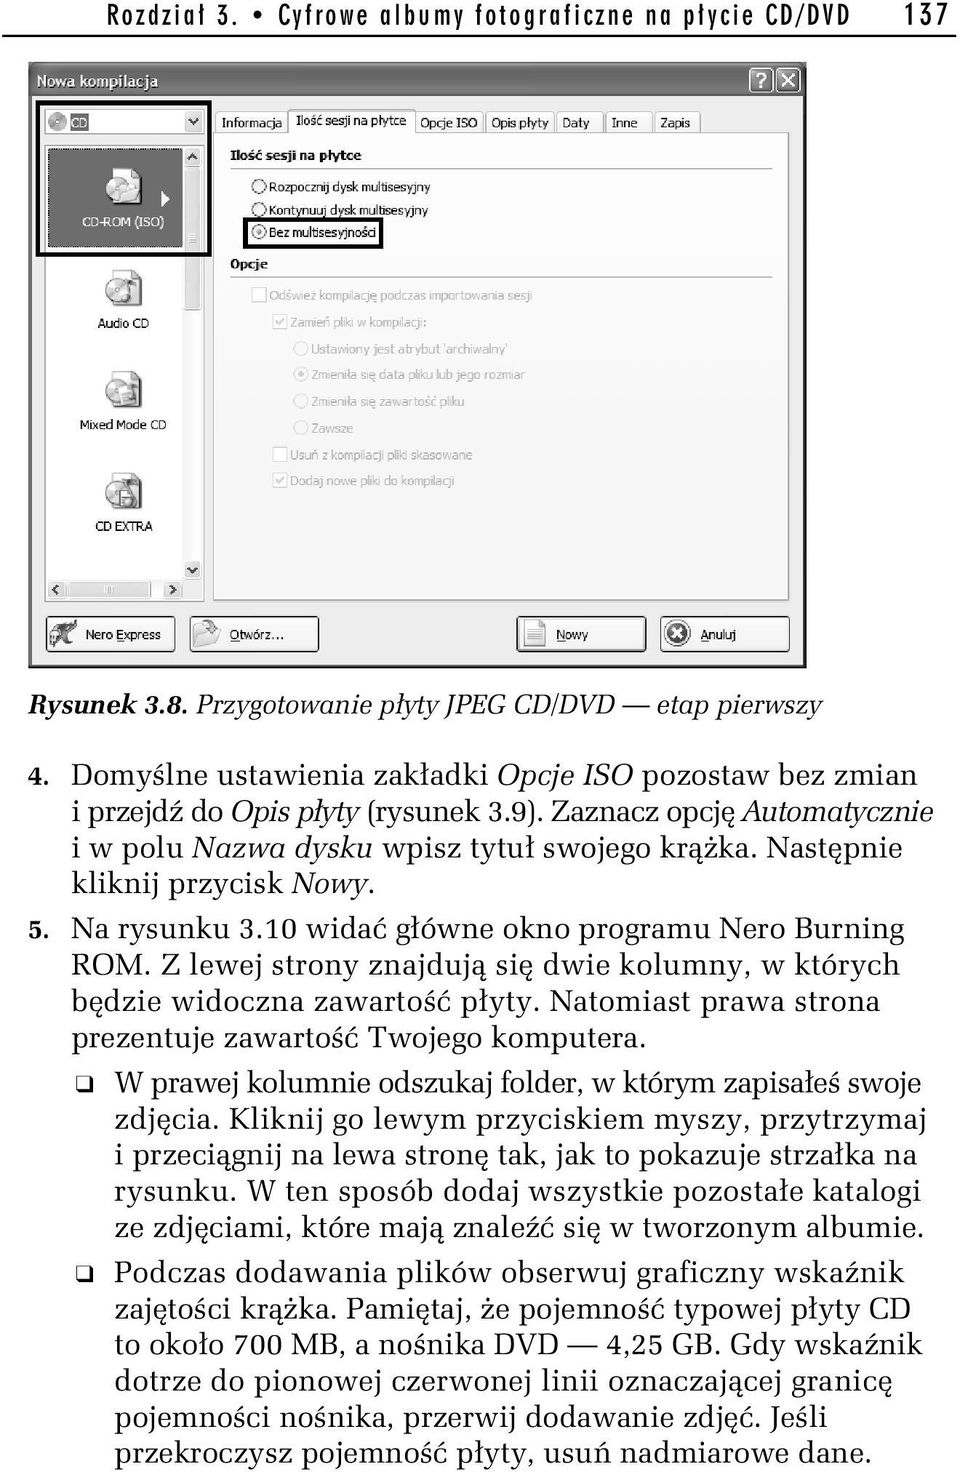 Następnie kliknij przycisk Nowy. 5. Na rysunku 3.10 widać główne okno programu Nero Burning ROM. Z lewej strony znajdują się dwie kolumny, w których będzie widoczna zawartość płyty.